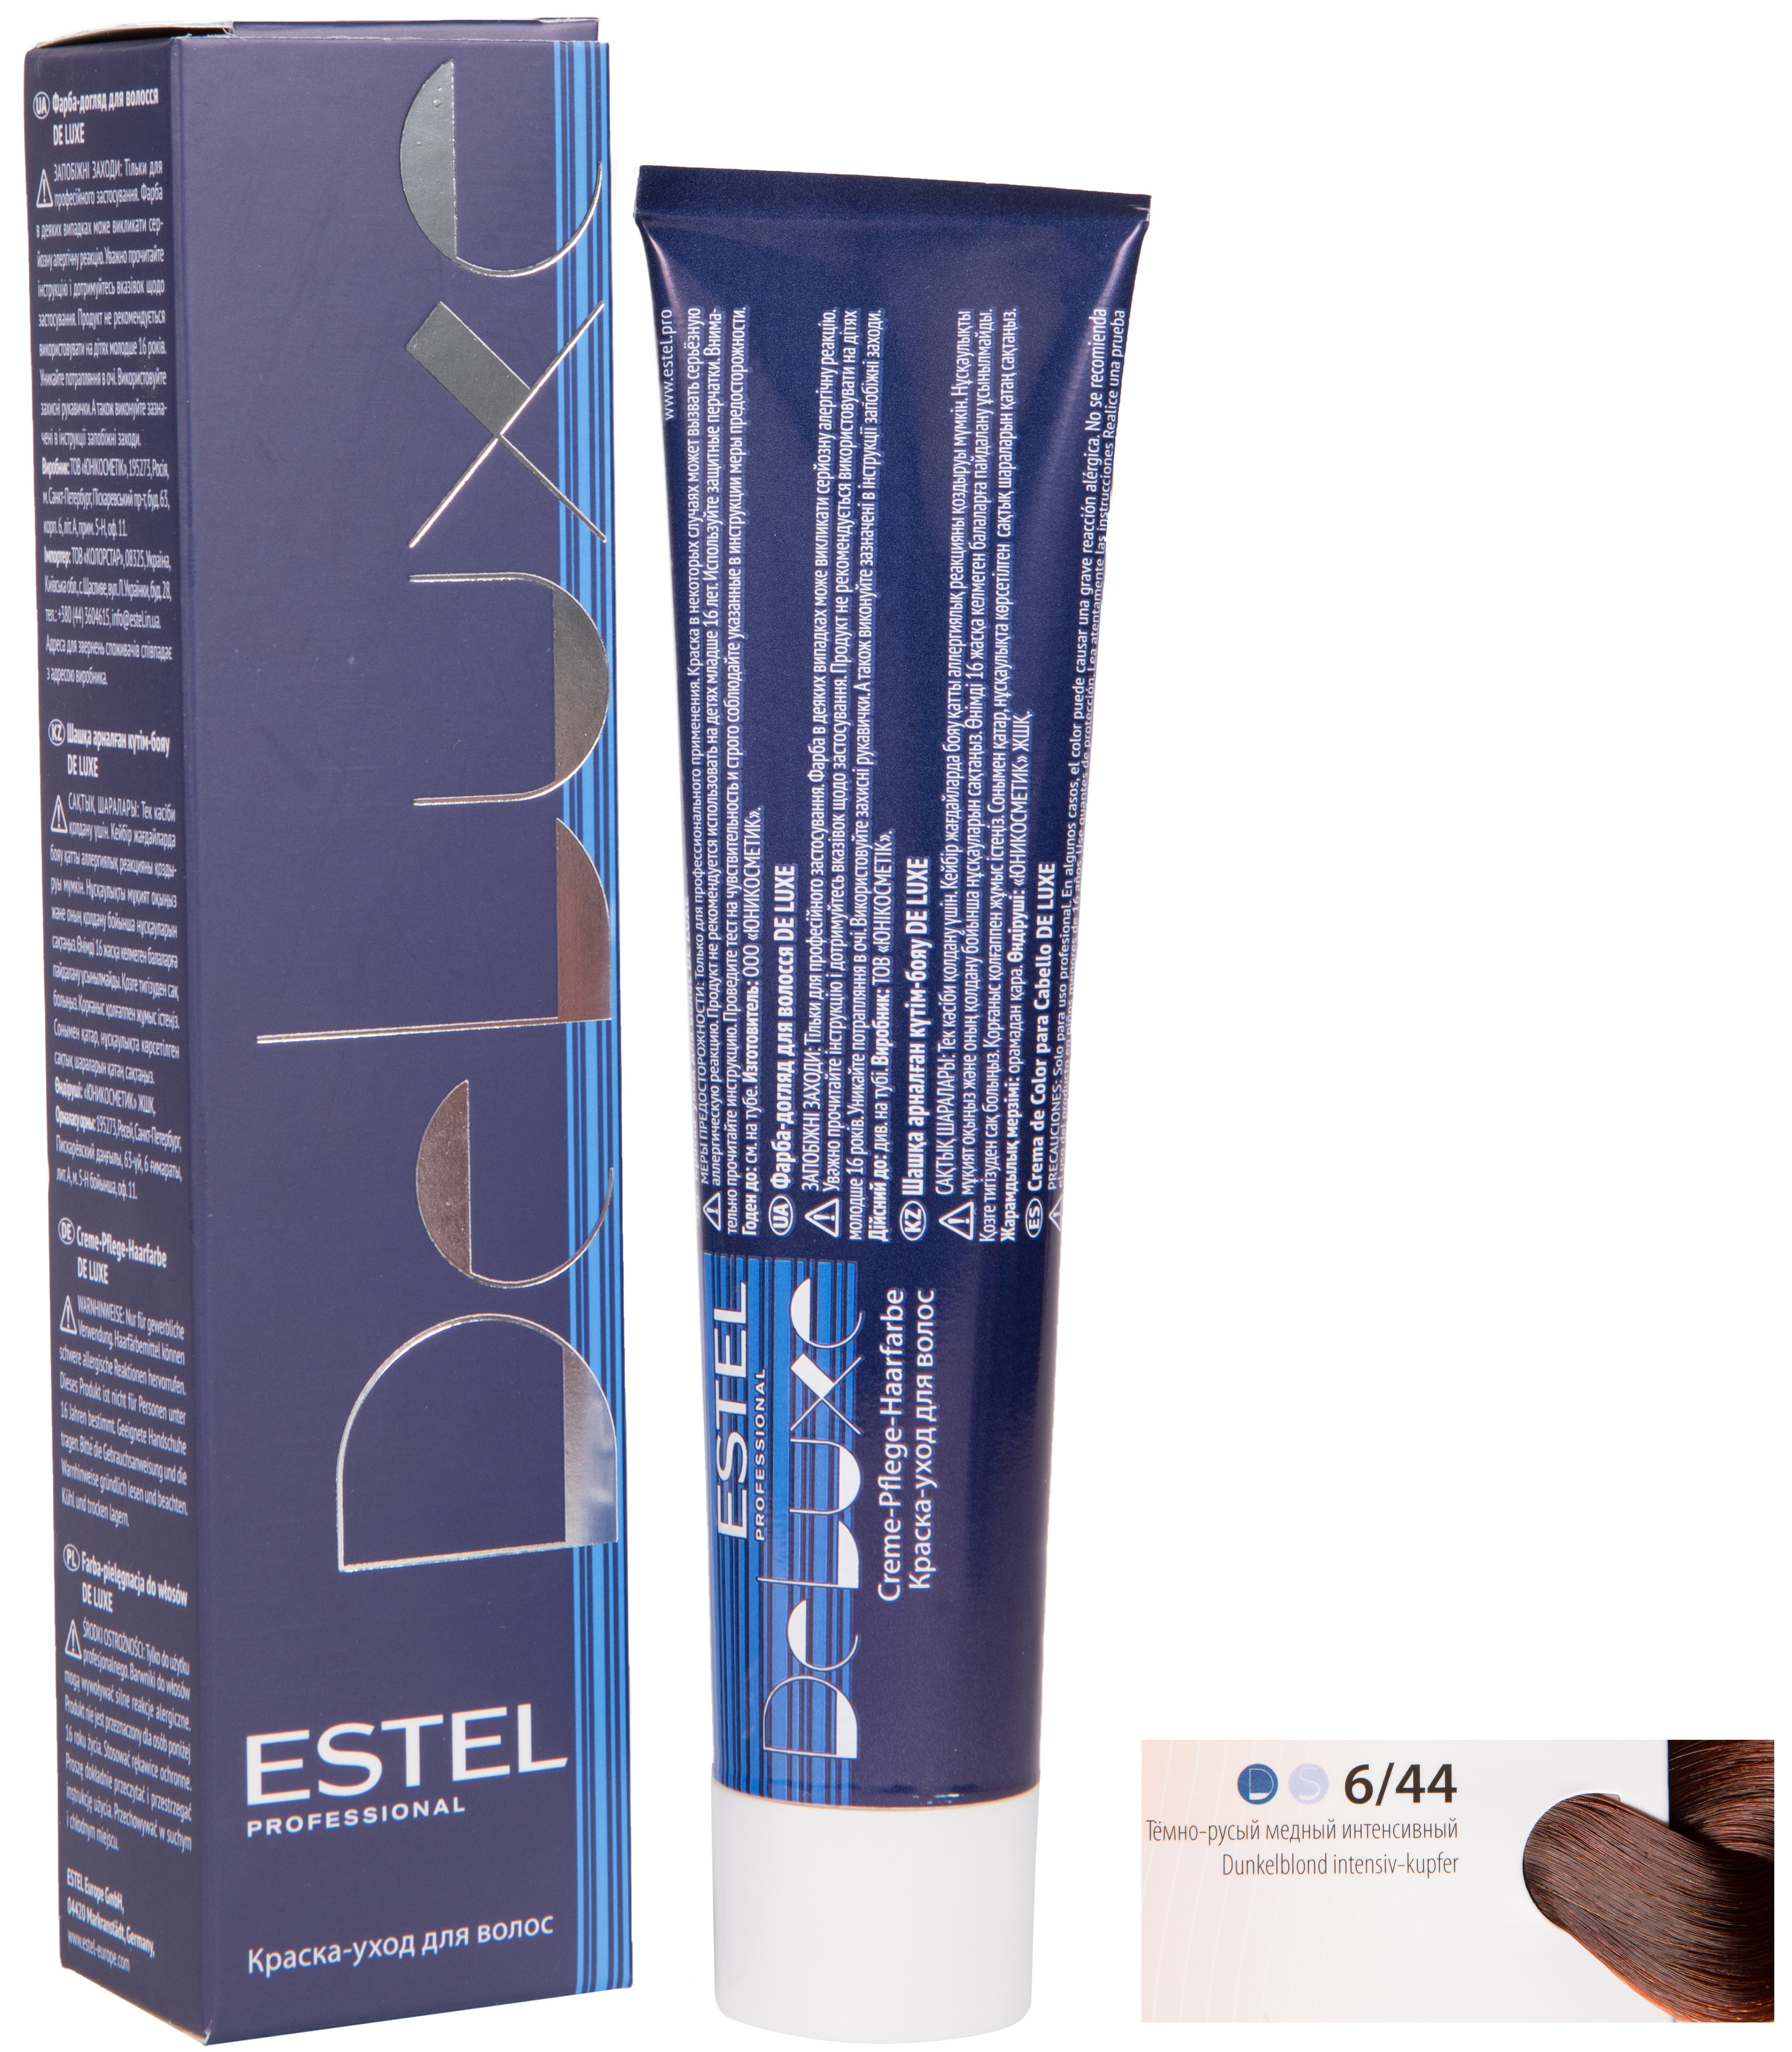 Краска для волос ESTEL PROFESSIONAL 6/44 DE LUXE краска-уход для окрашивания волос, темно-русый медный интенсивный 60 мл